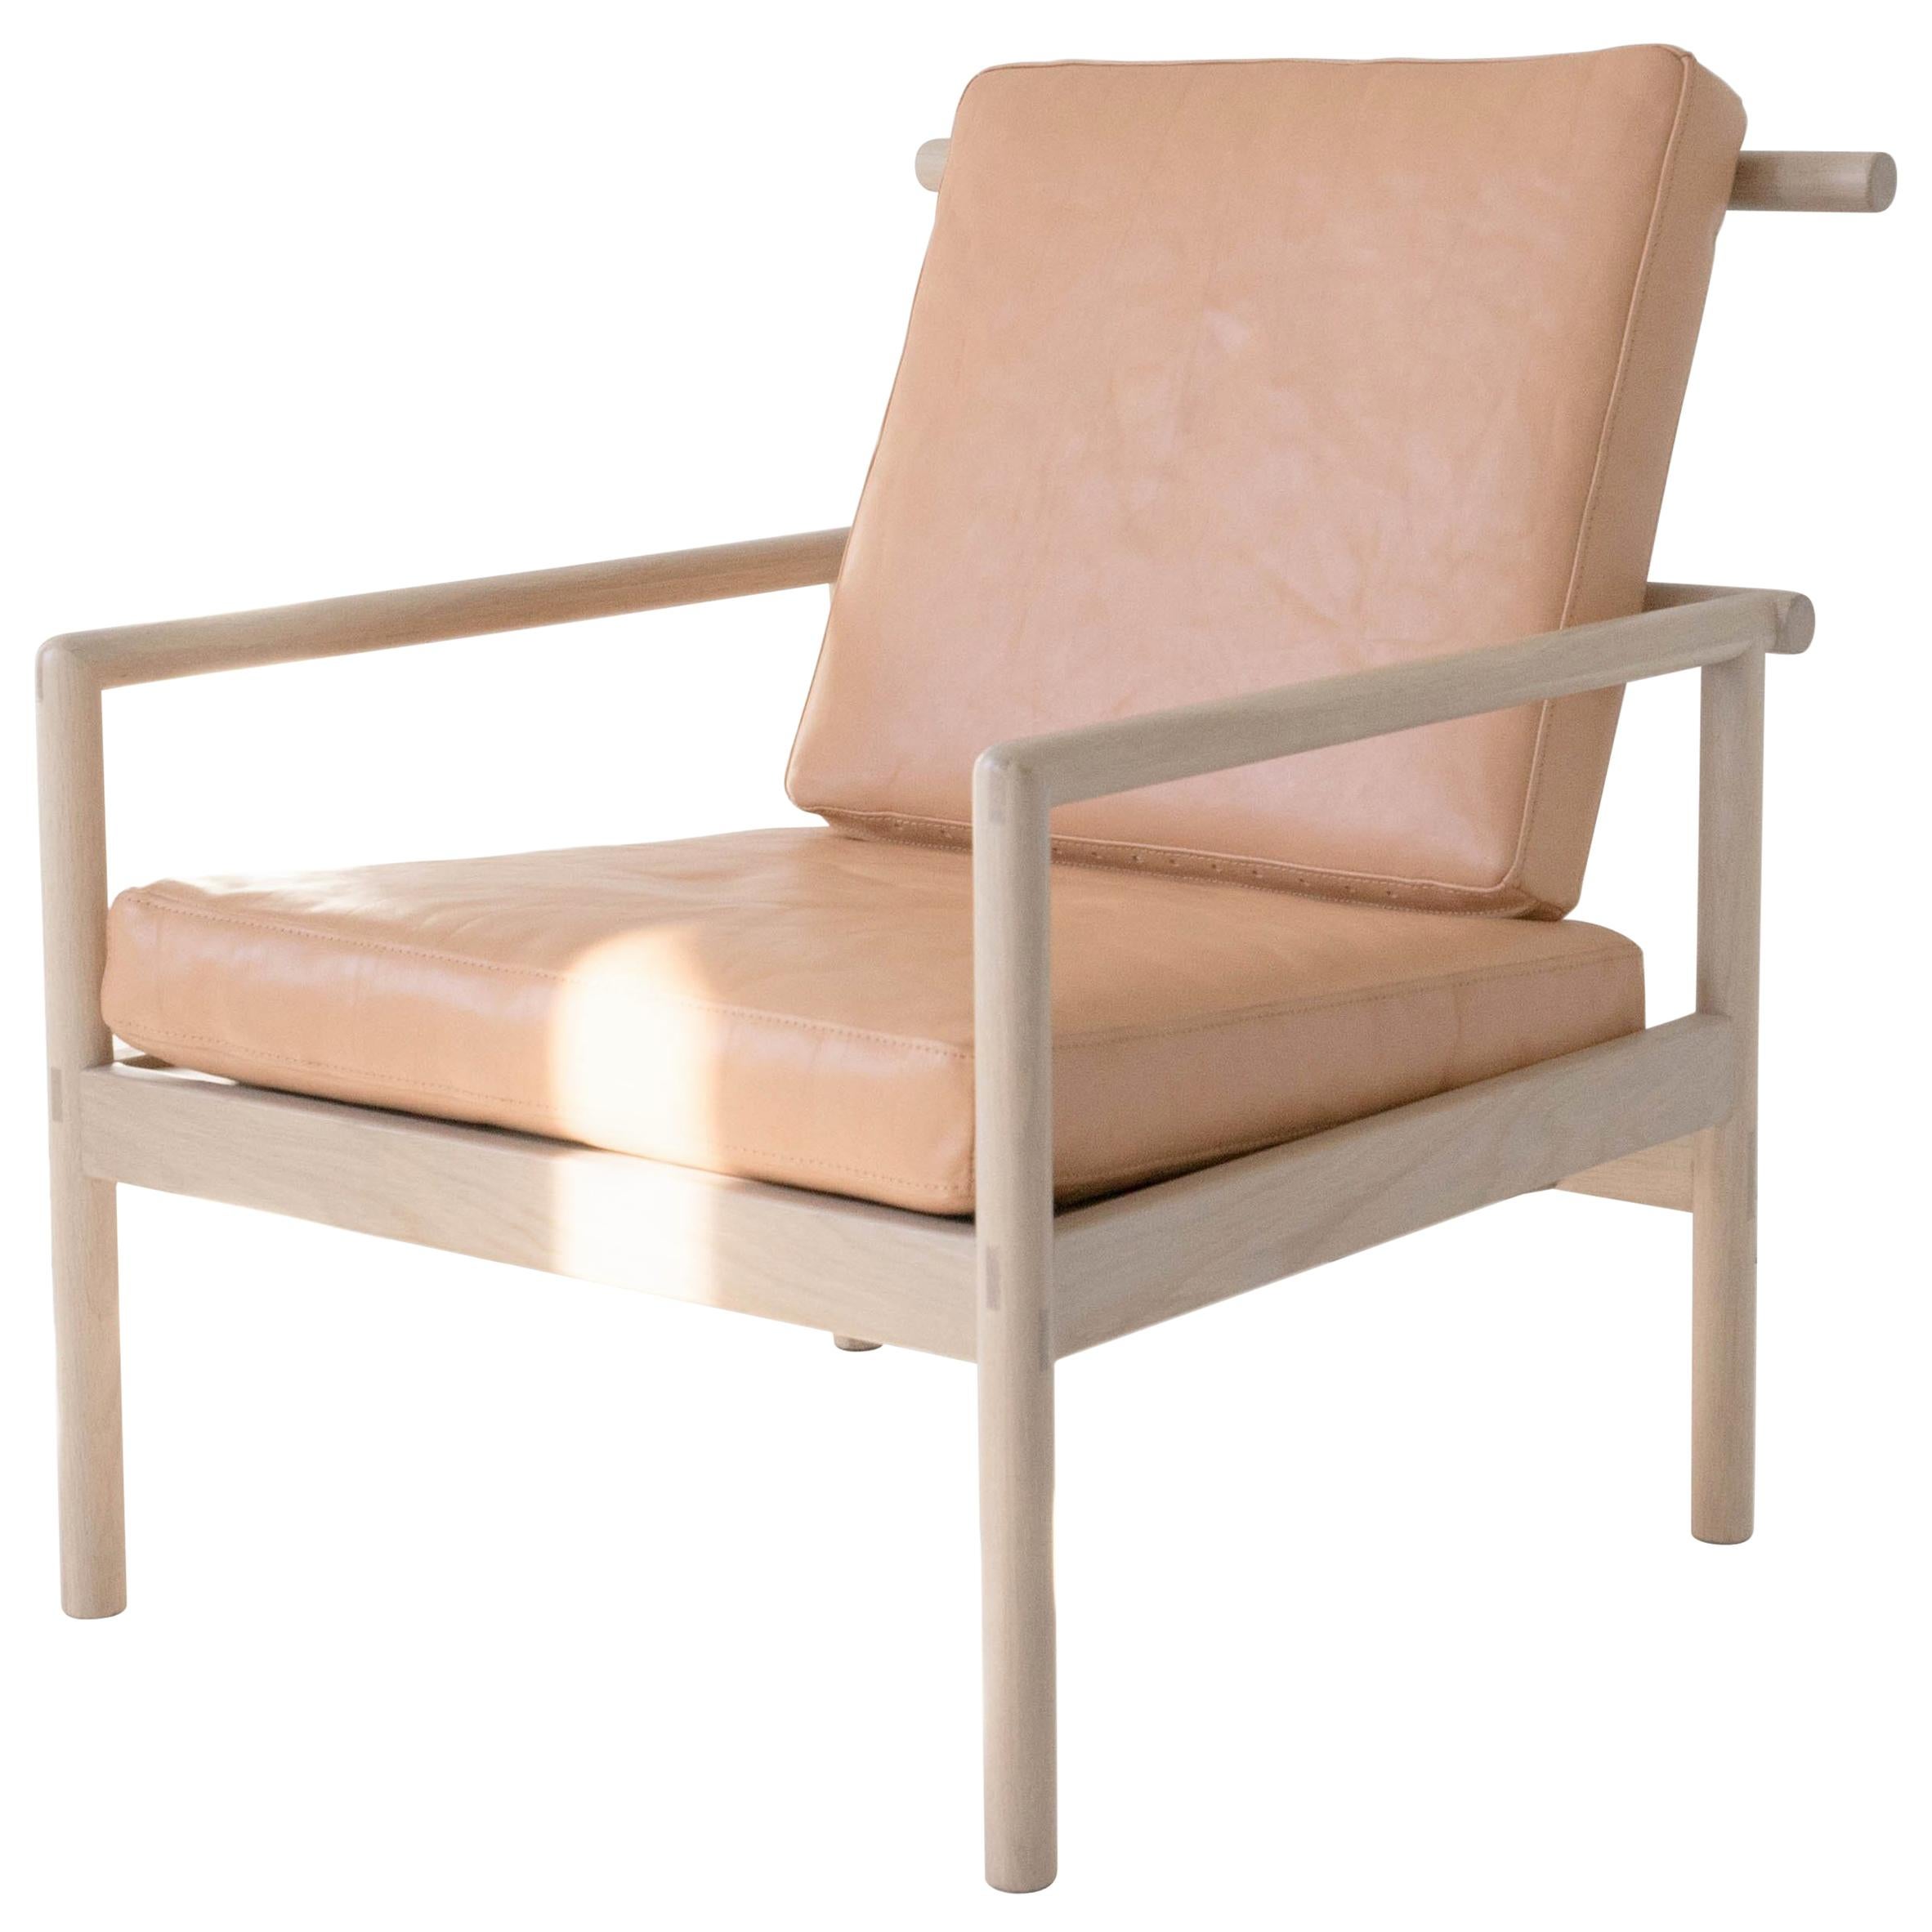 Dix chaises par Sun at, chaise longue nue minimaliste / mi-siècle moderne en bois et cuir